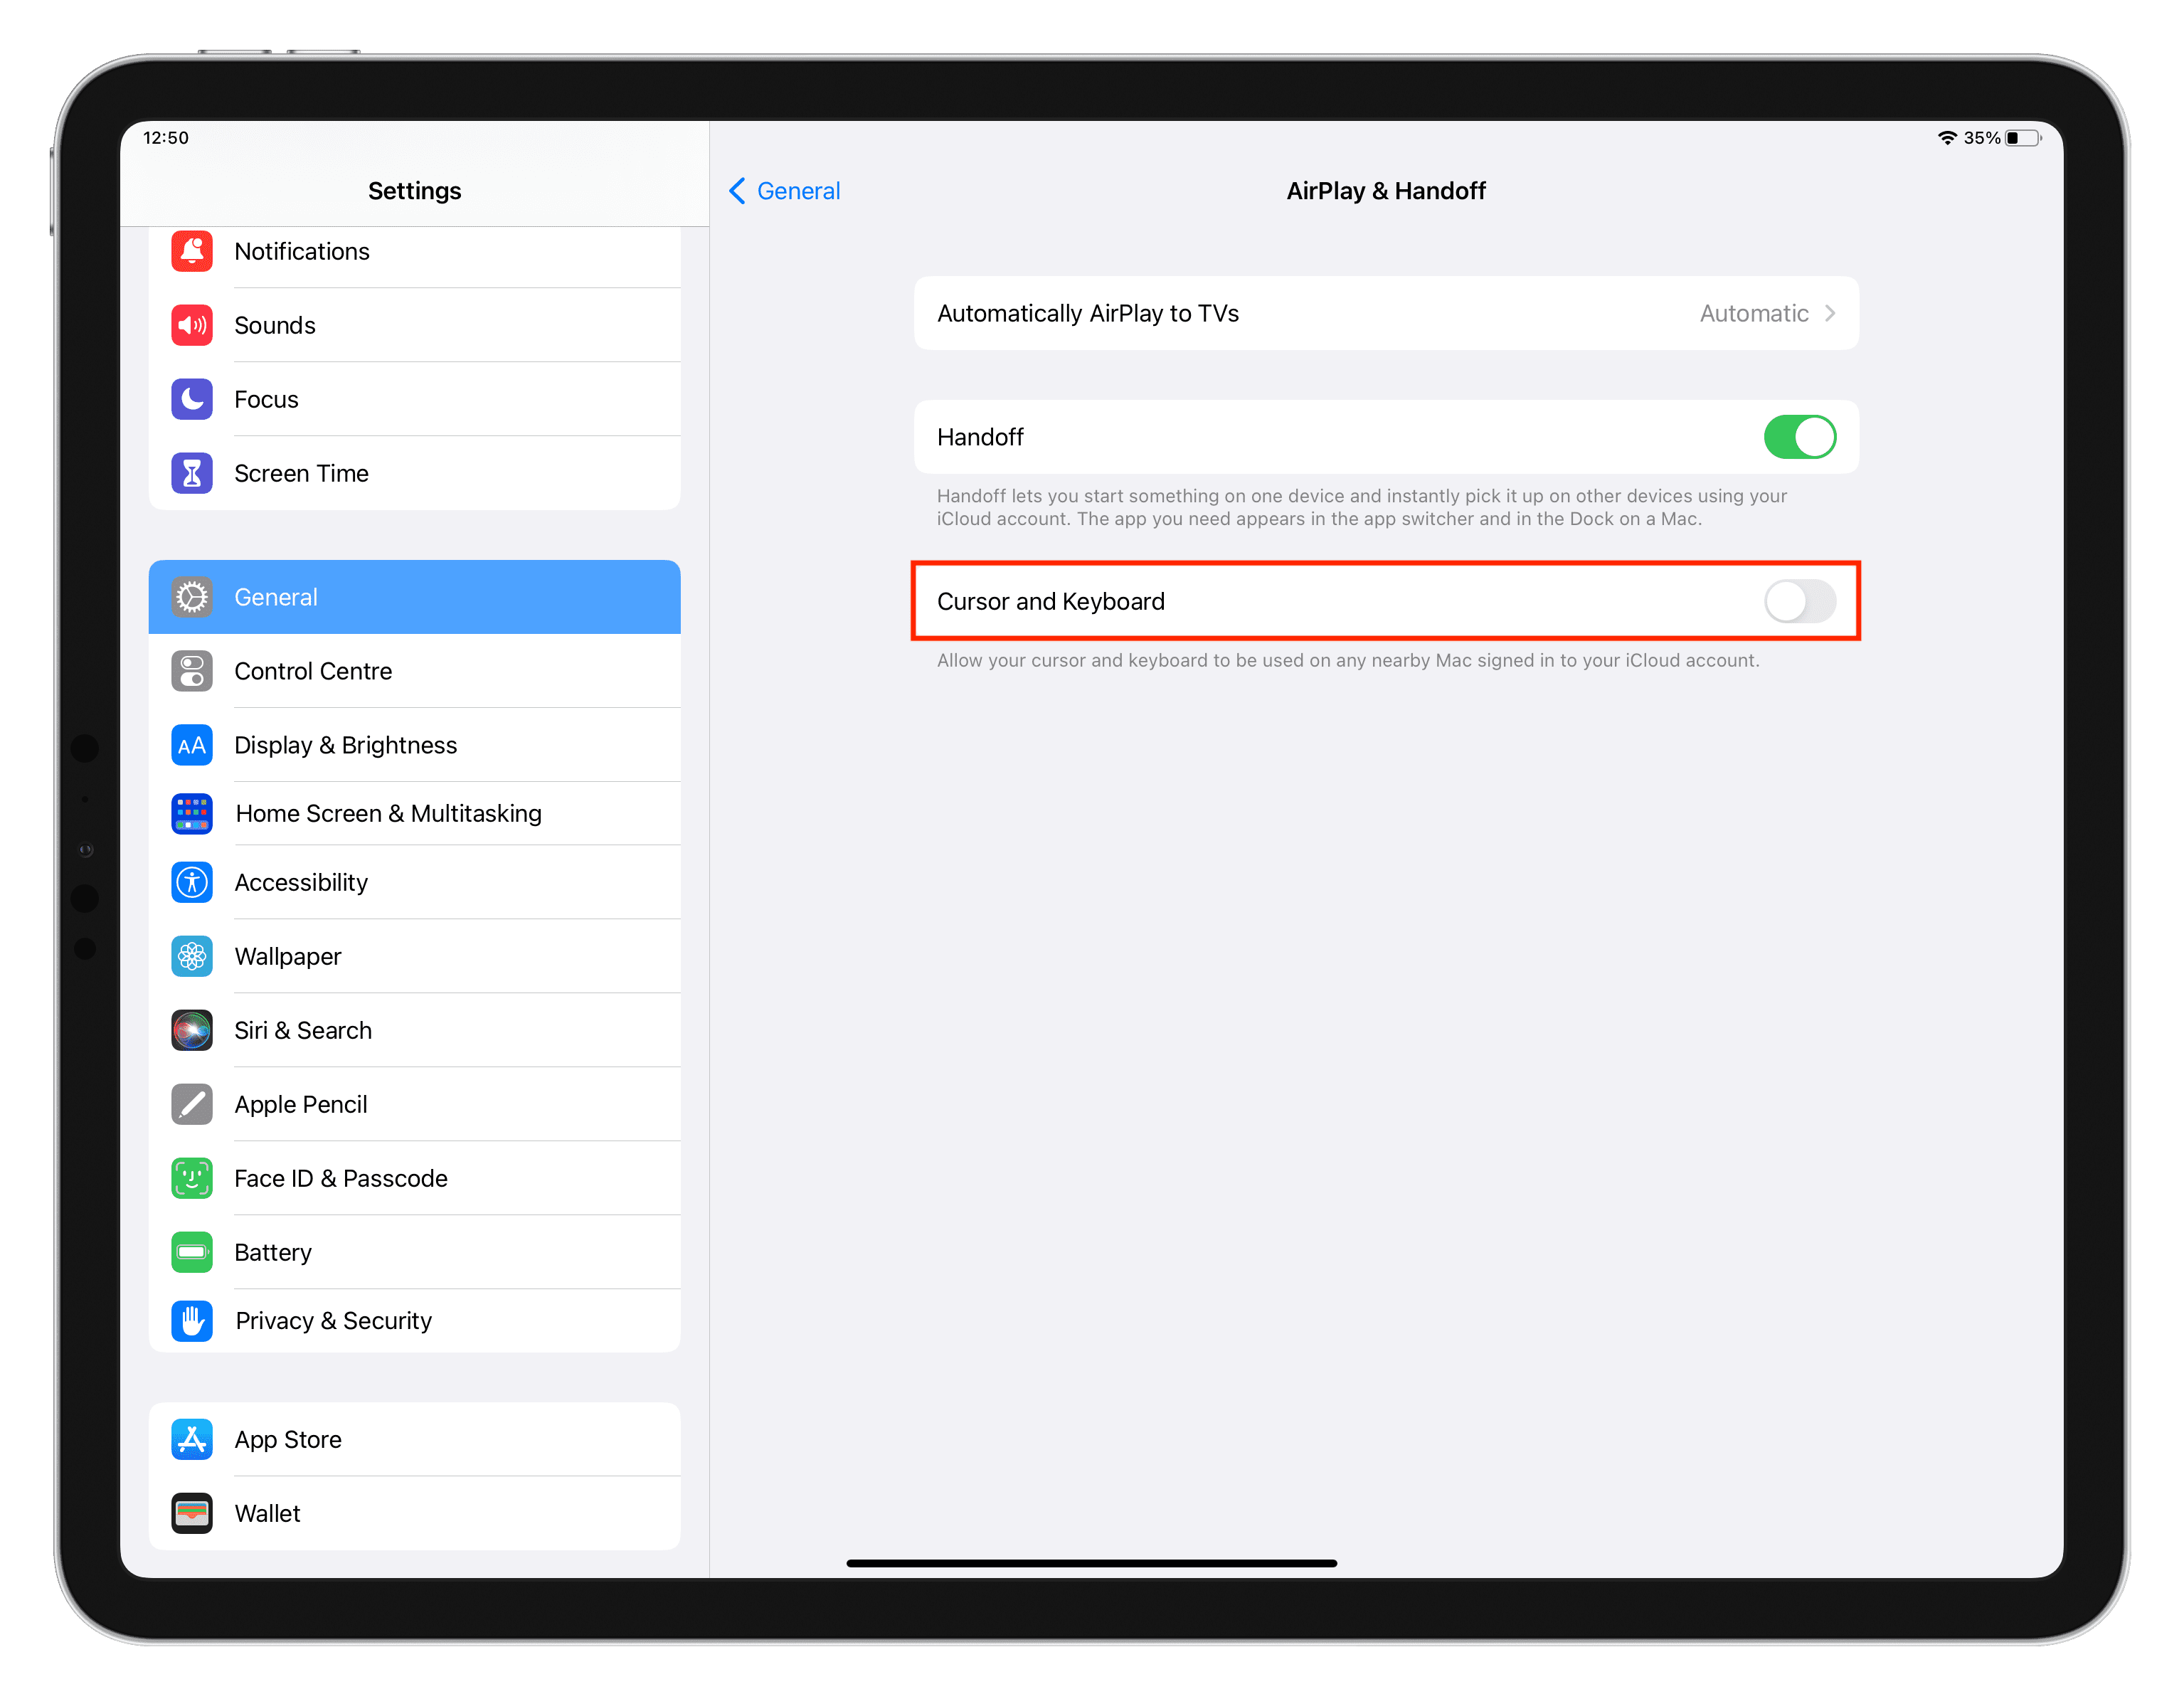 Turn off Cursor and Keyboard in iPad settings